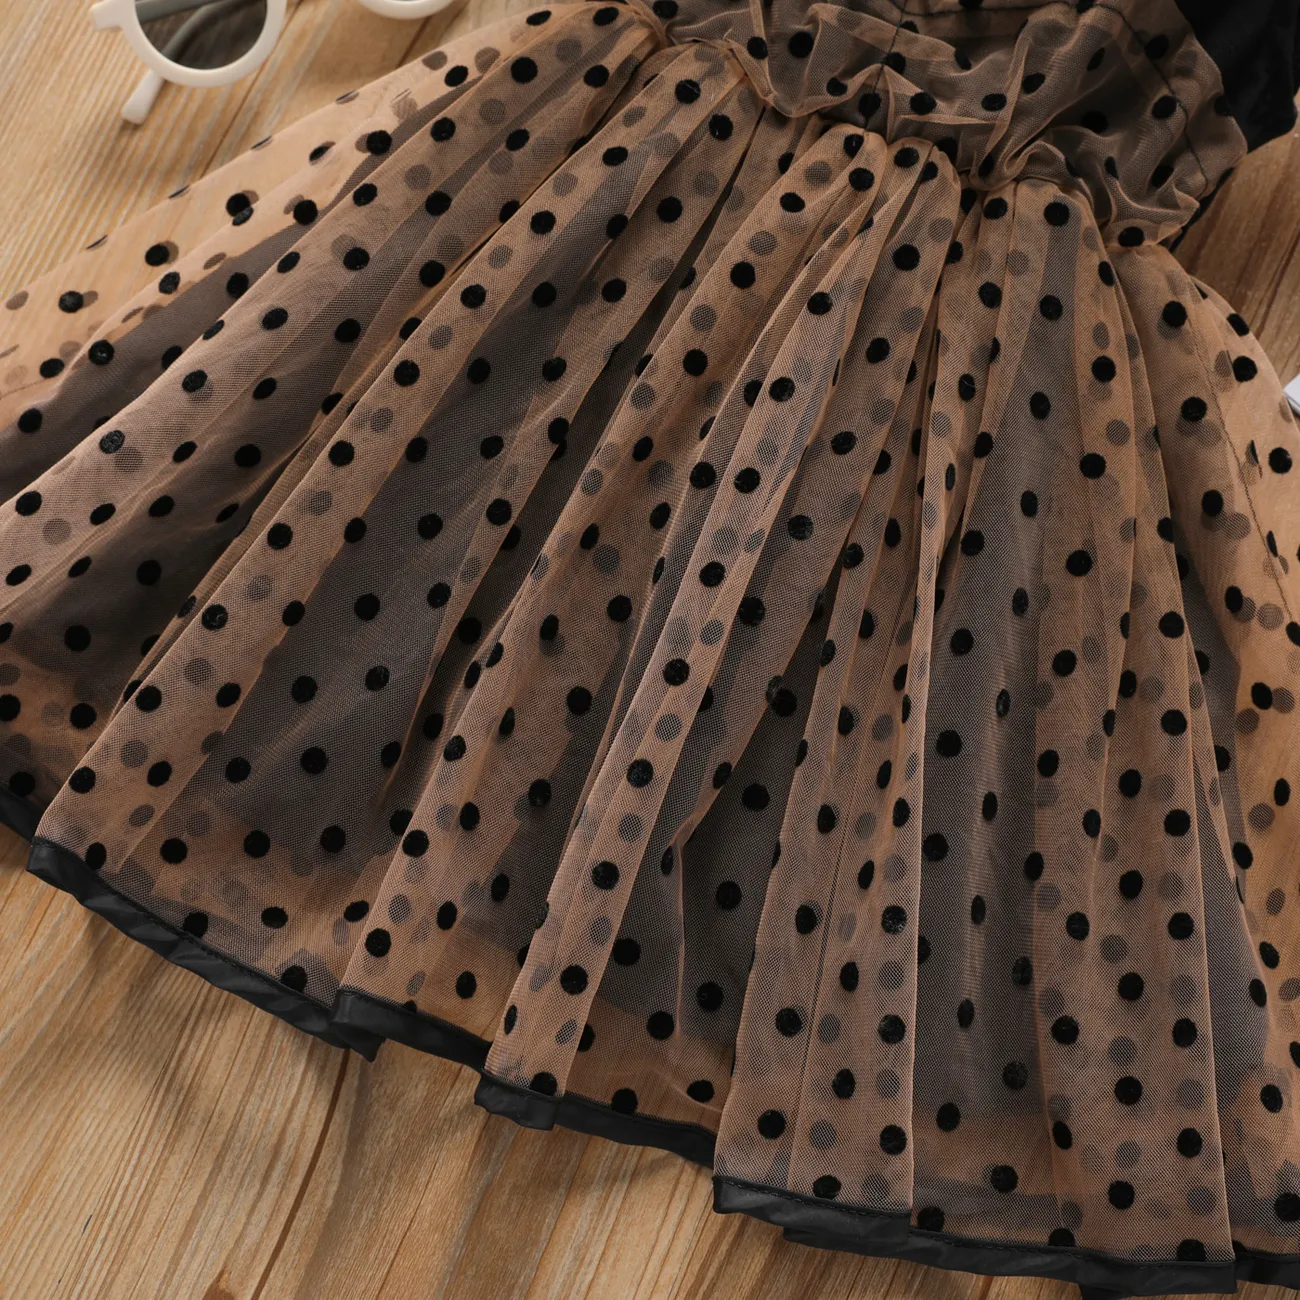 فستان فتاة صغيرة منقطة بأكمام رفرفة شبكي أسود big image 1